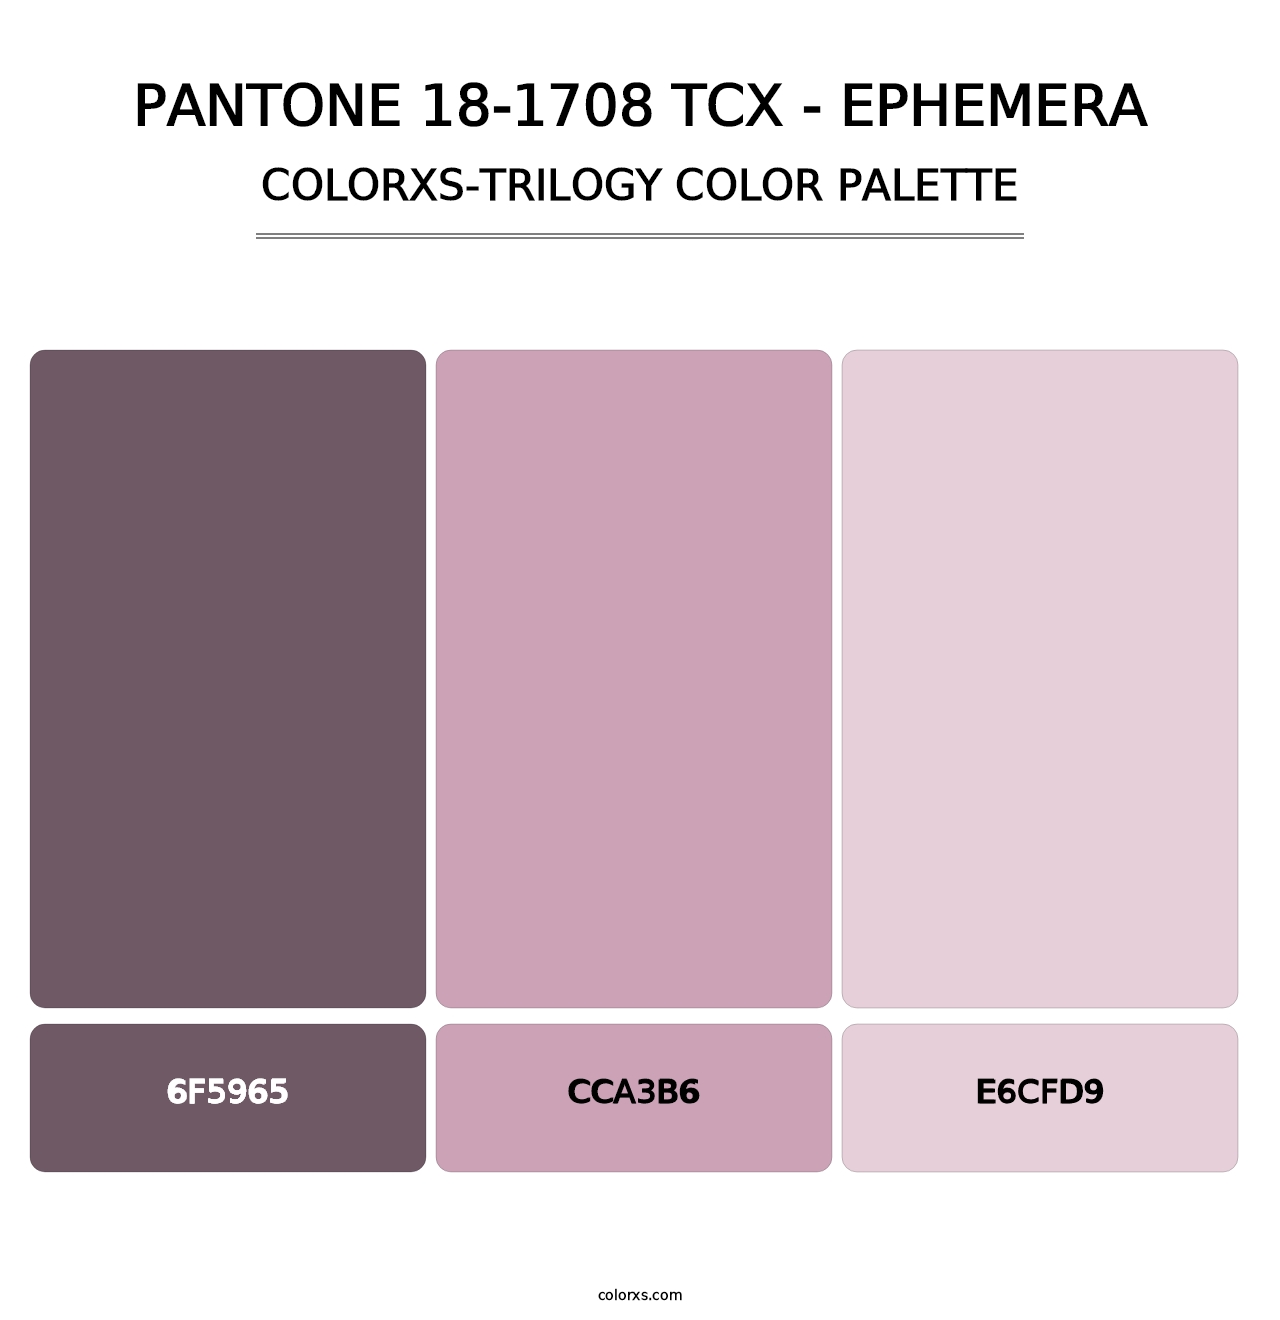 PANTONE 18-1708 TCX - Ephemera - Colorxs Trilogy Palette